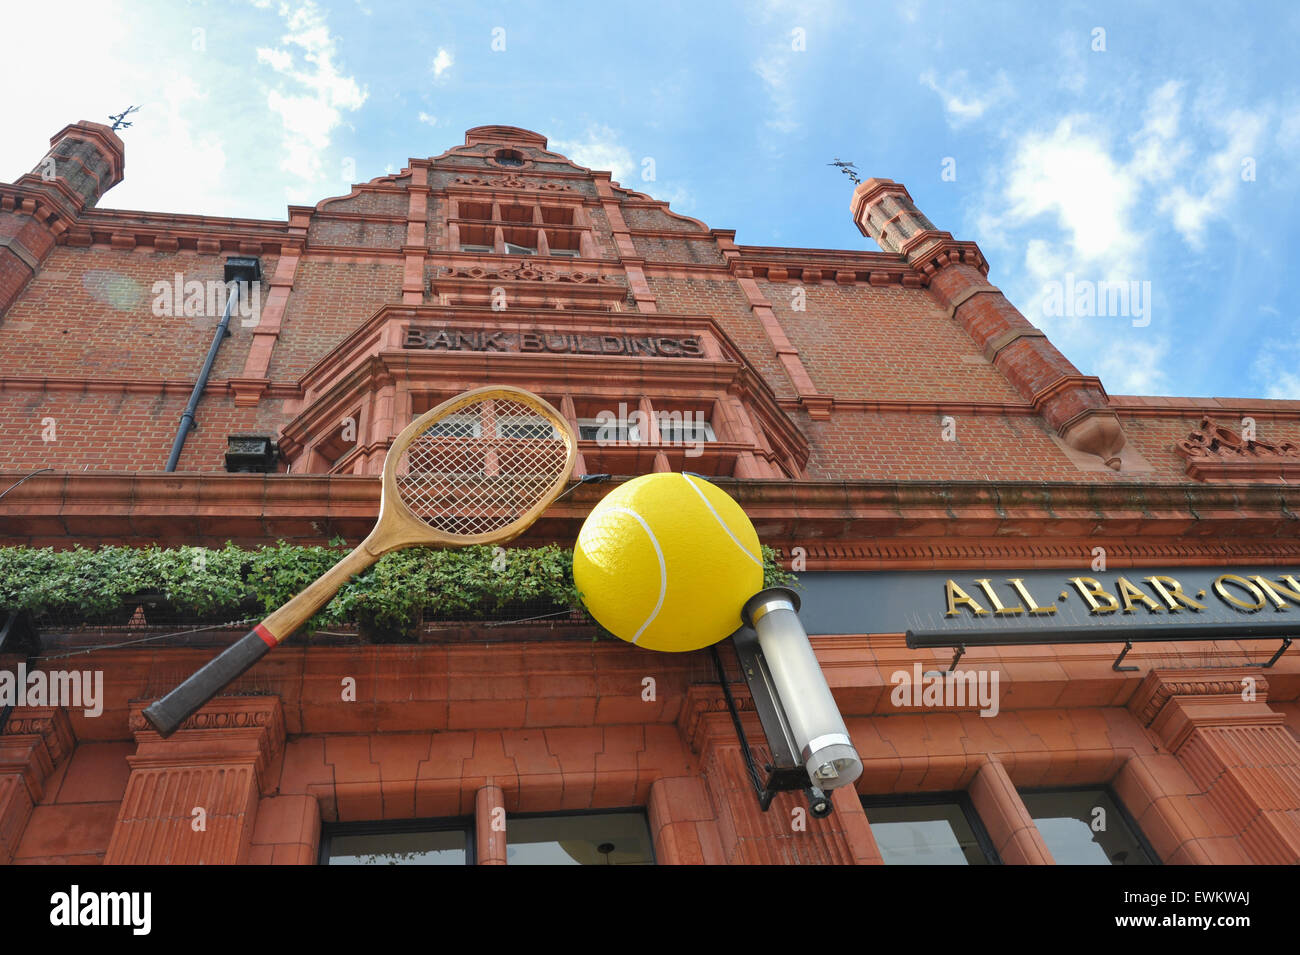 Wimbledon, Londres, Reino Unido. El 28 de junio de 2015. En los preparativos para los campeonatos de tenis de Wimbledon. Crédito: Matthew Chattle/Alamy Live News Foto de stock